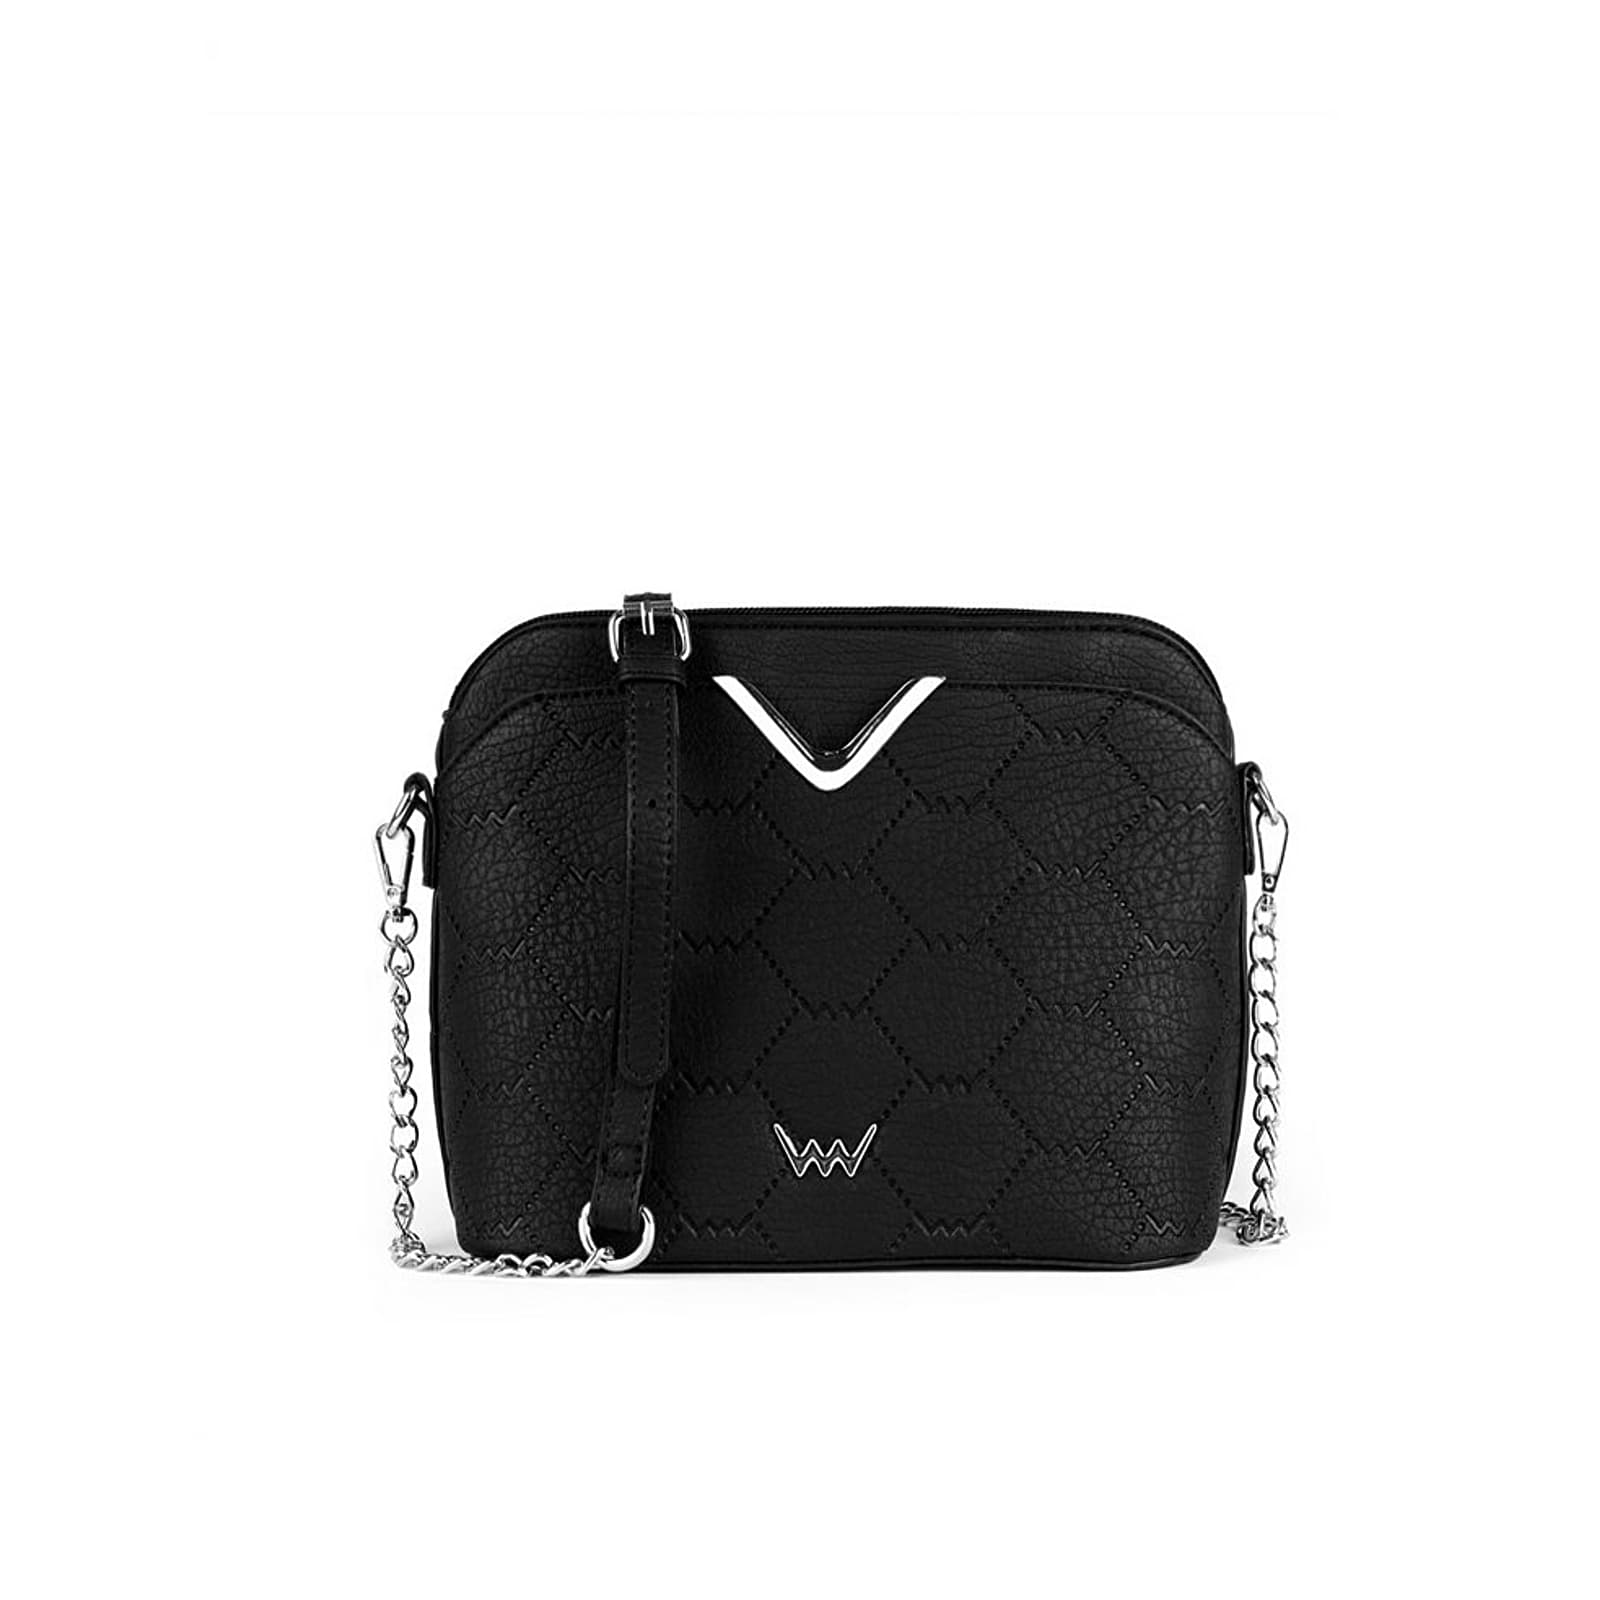 Handbags Vuch Fossy Black